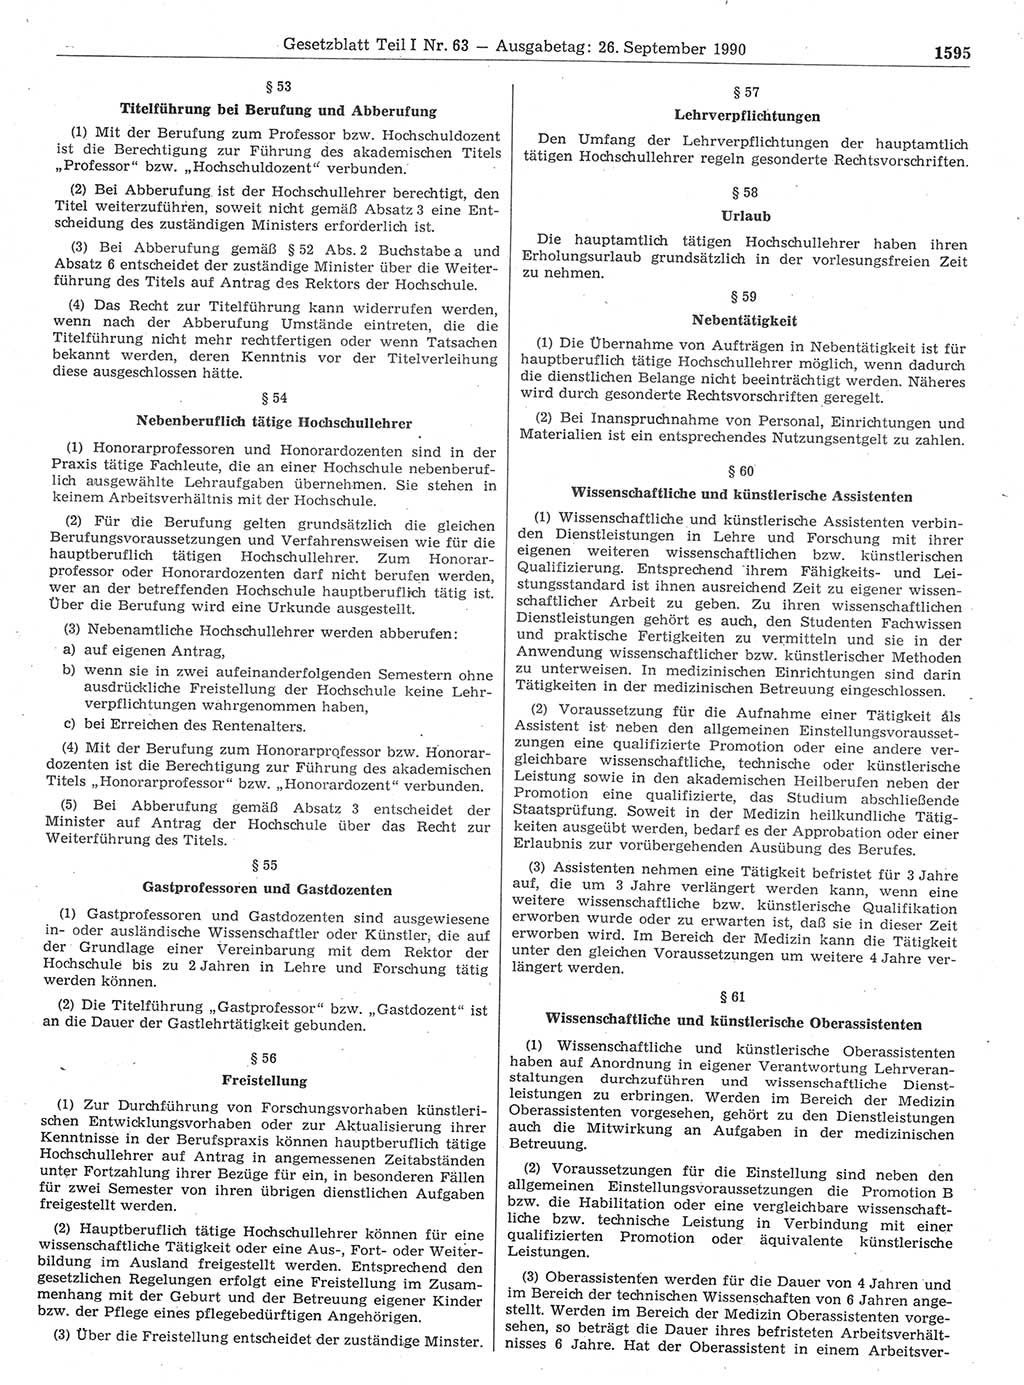 Gesetzblatt (GBl.) der Deutschen Demokratischen Republik (DDR) Teil Ⅰ 1990, Seite 1595 (GBl. DDR Ⅰ 1990, S. 1595)